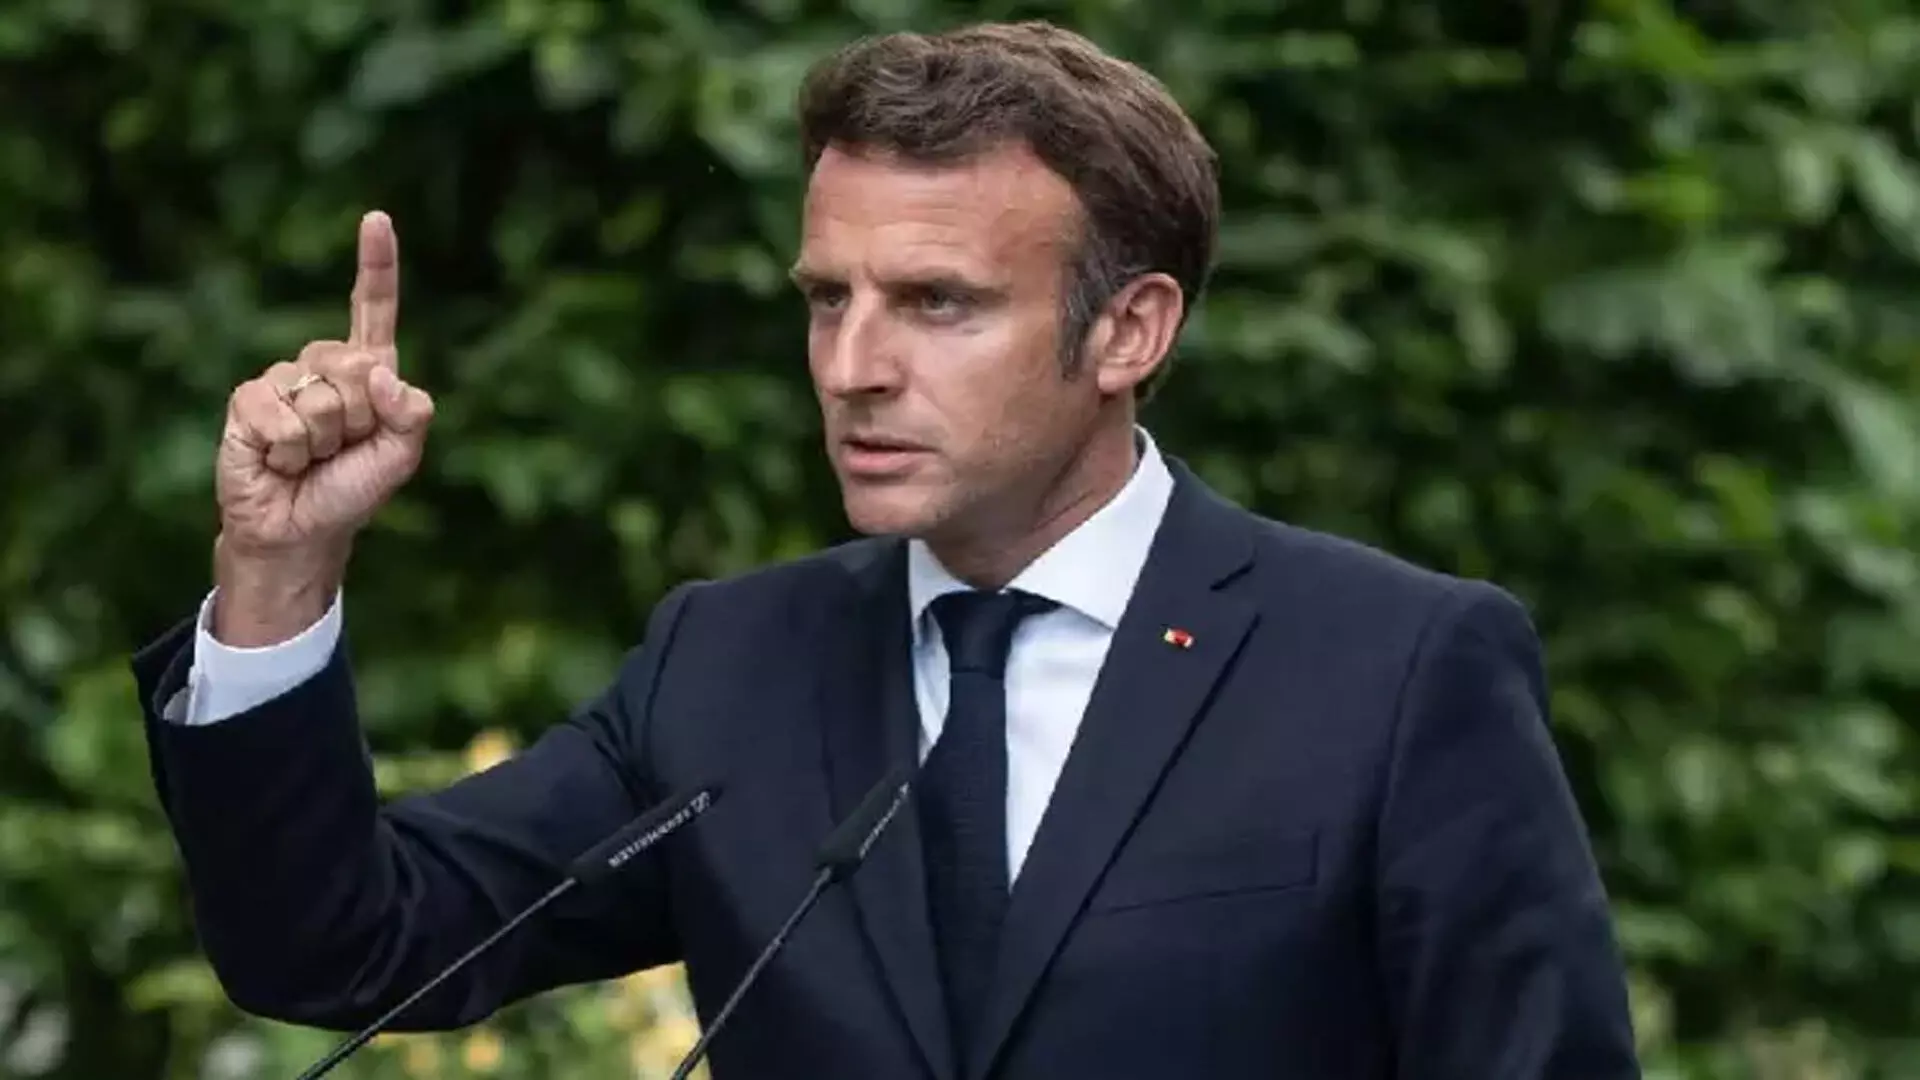 France के राष्ट्रपति ने प्रधानमंत्री का इस्तीफा स्वीकार किया